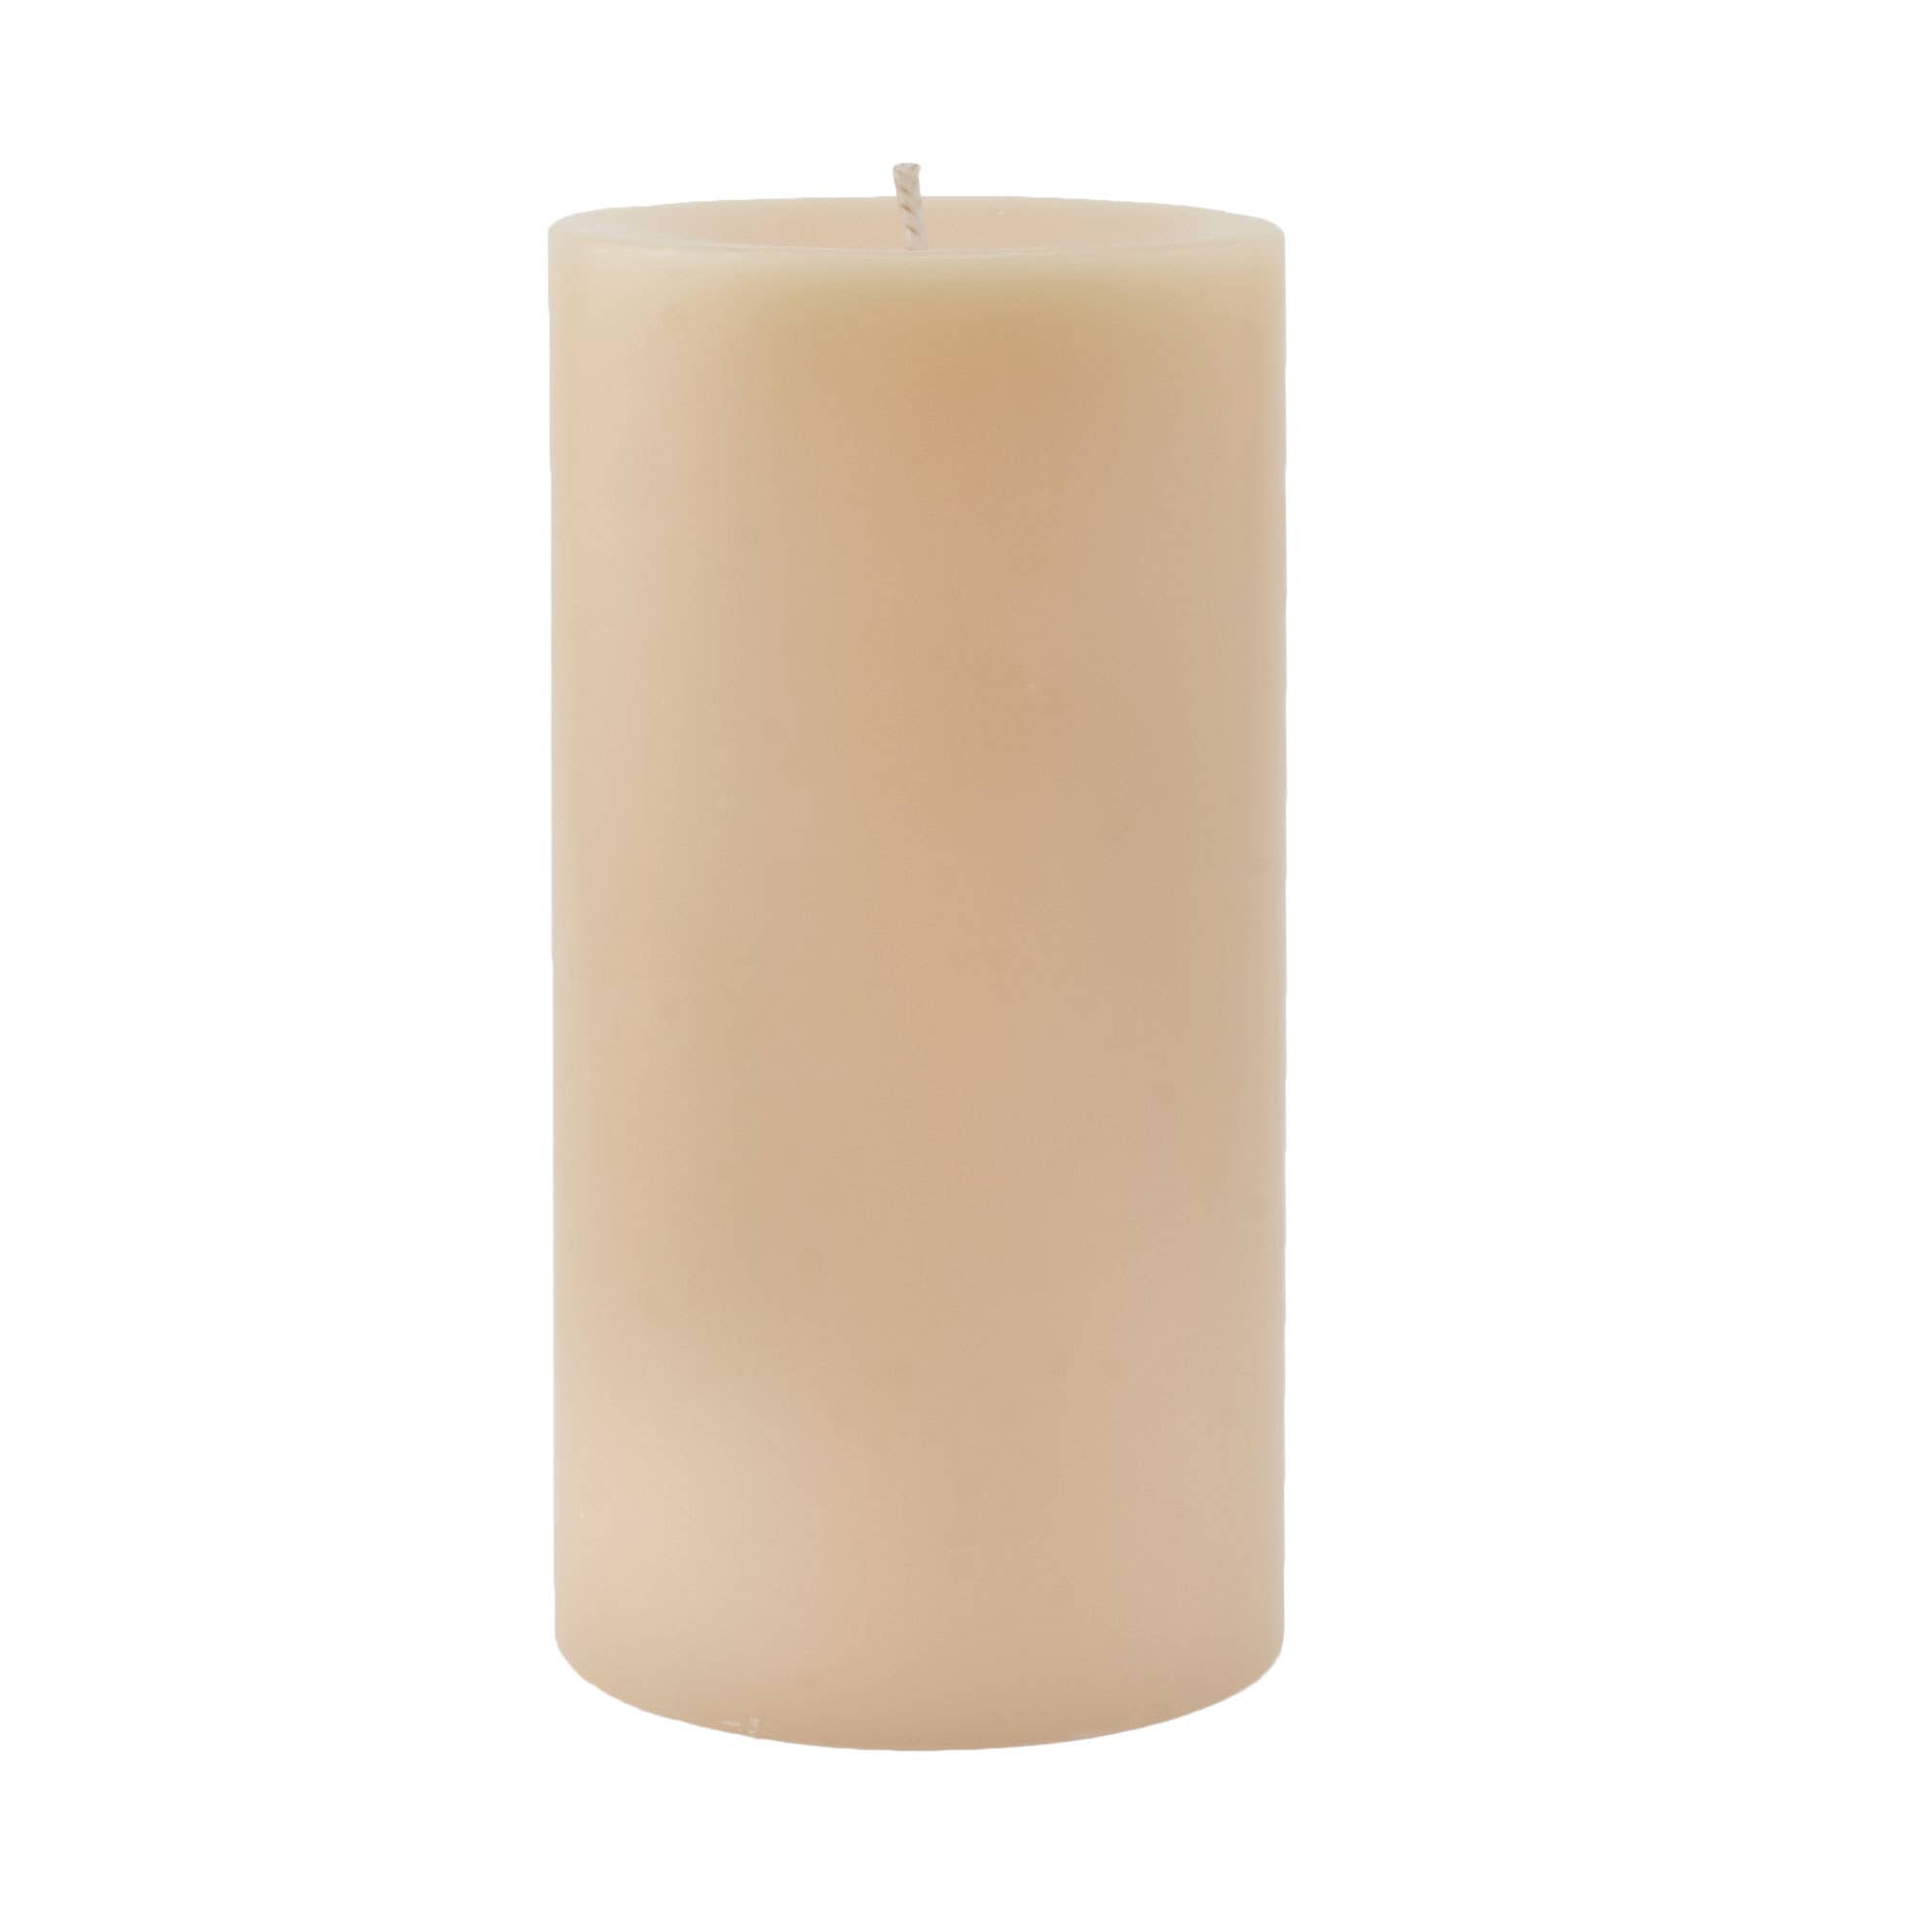 Pillar Candles, 3x6 Tan